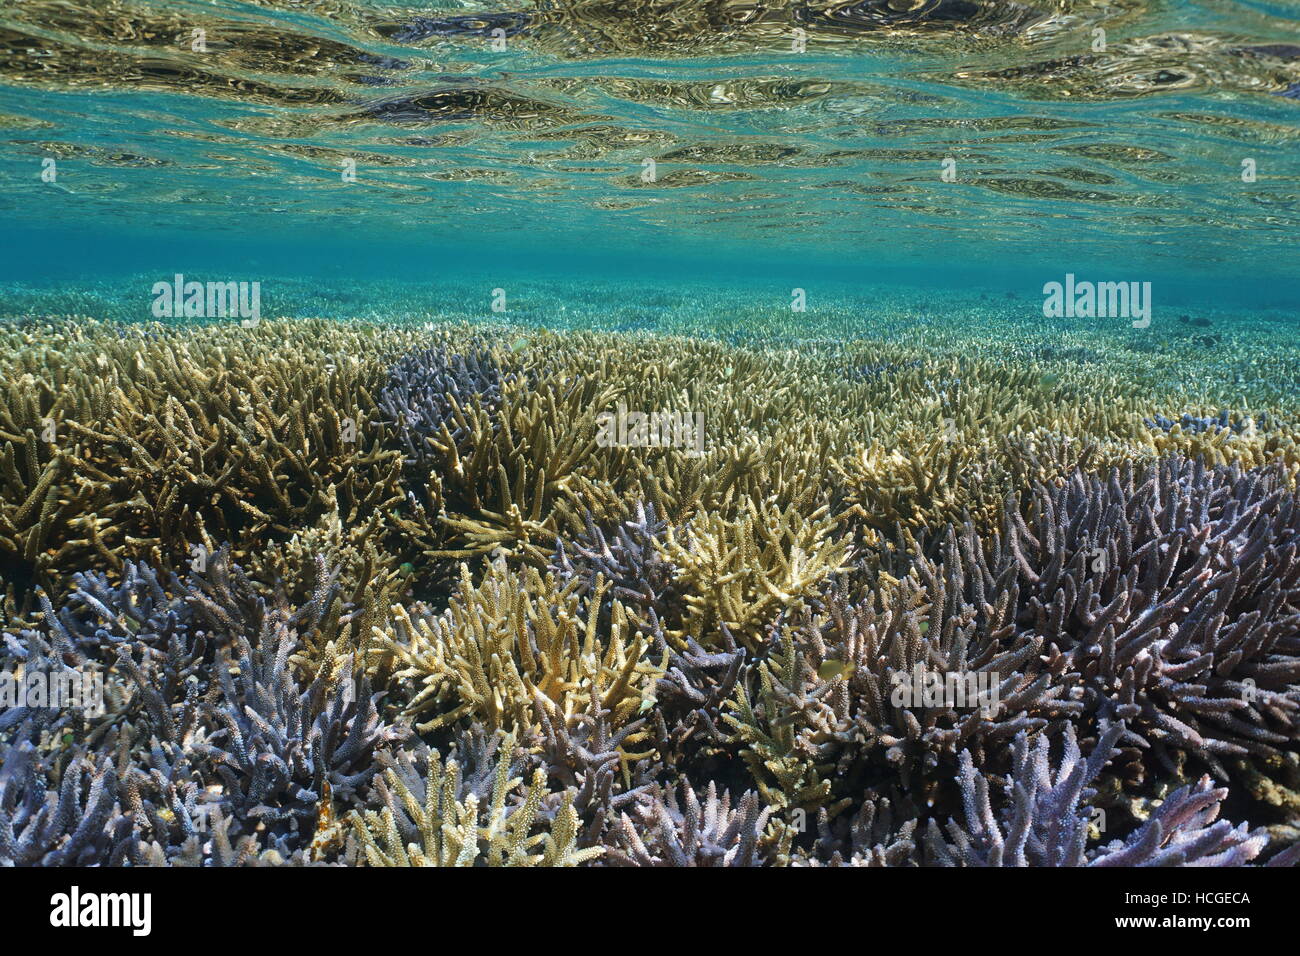 Shallow Coral reef subacquei con Acropora staghorn coralli in buone condizioni, oceano pacifico del sud, Nuova Caledonia Foto Stock